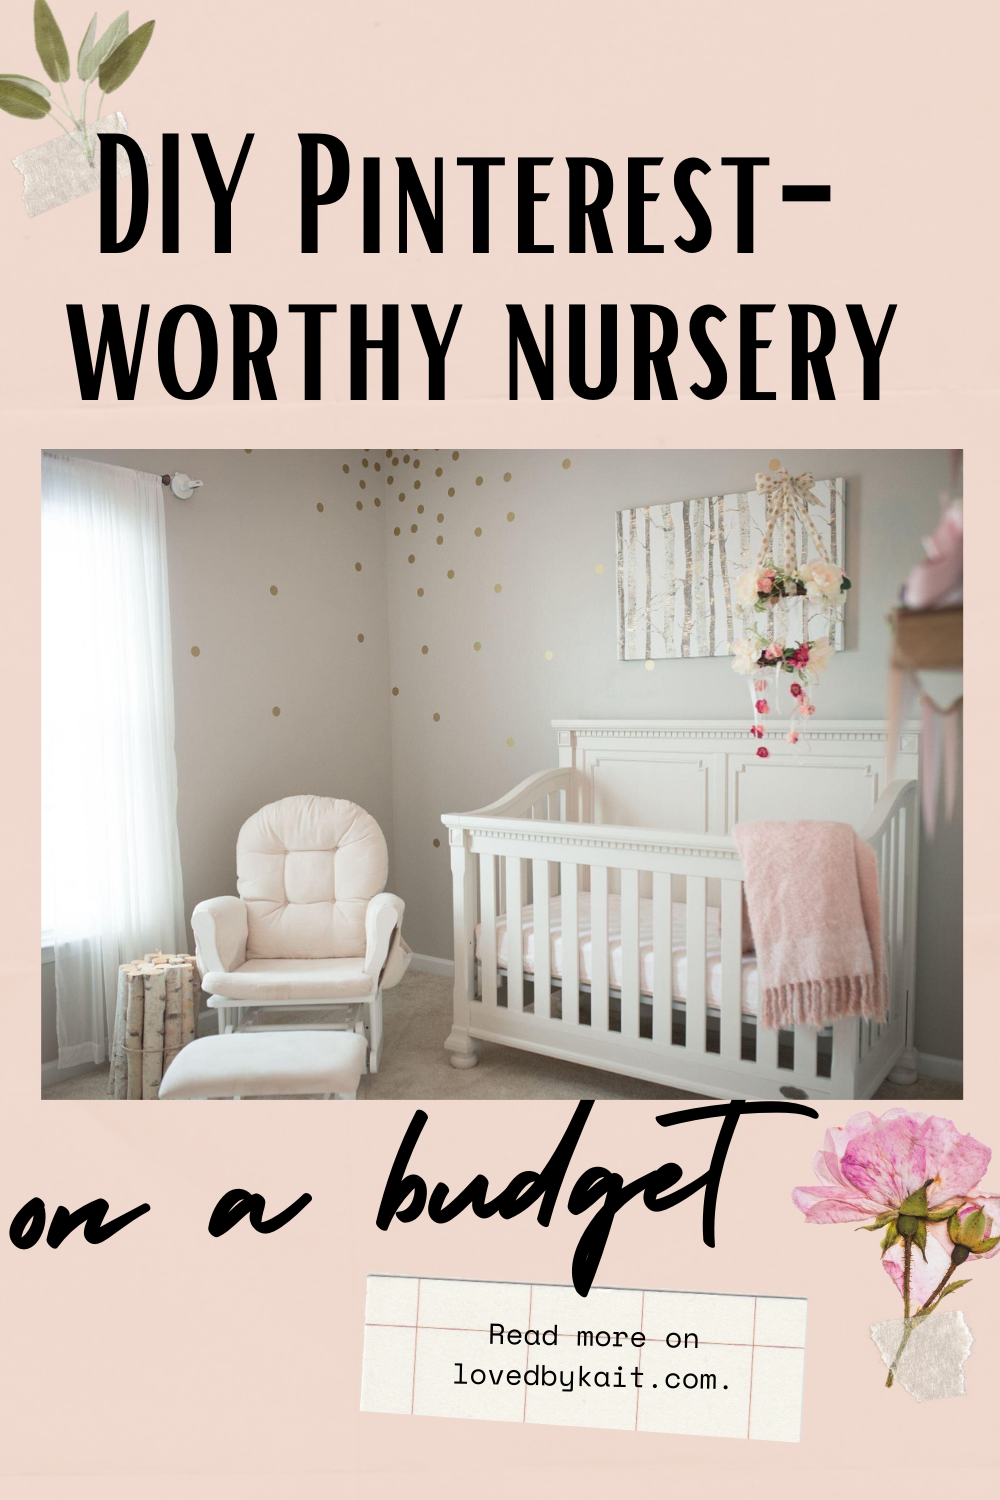 DIY Pinterest-Worthy Girly Nursery on a Budget